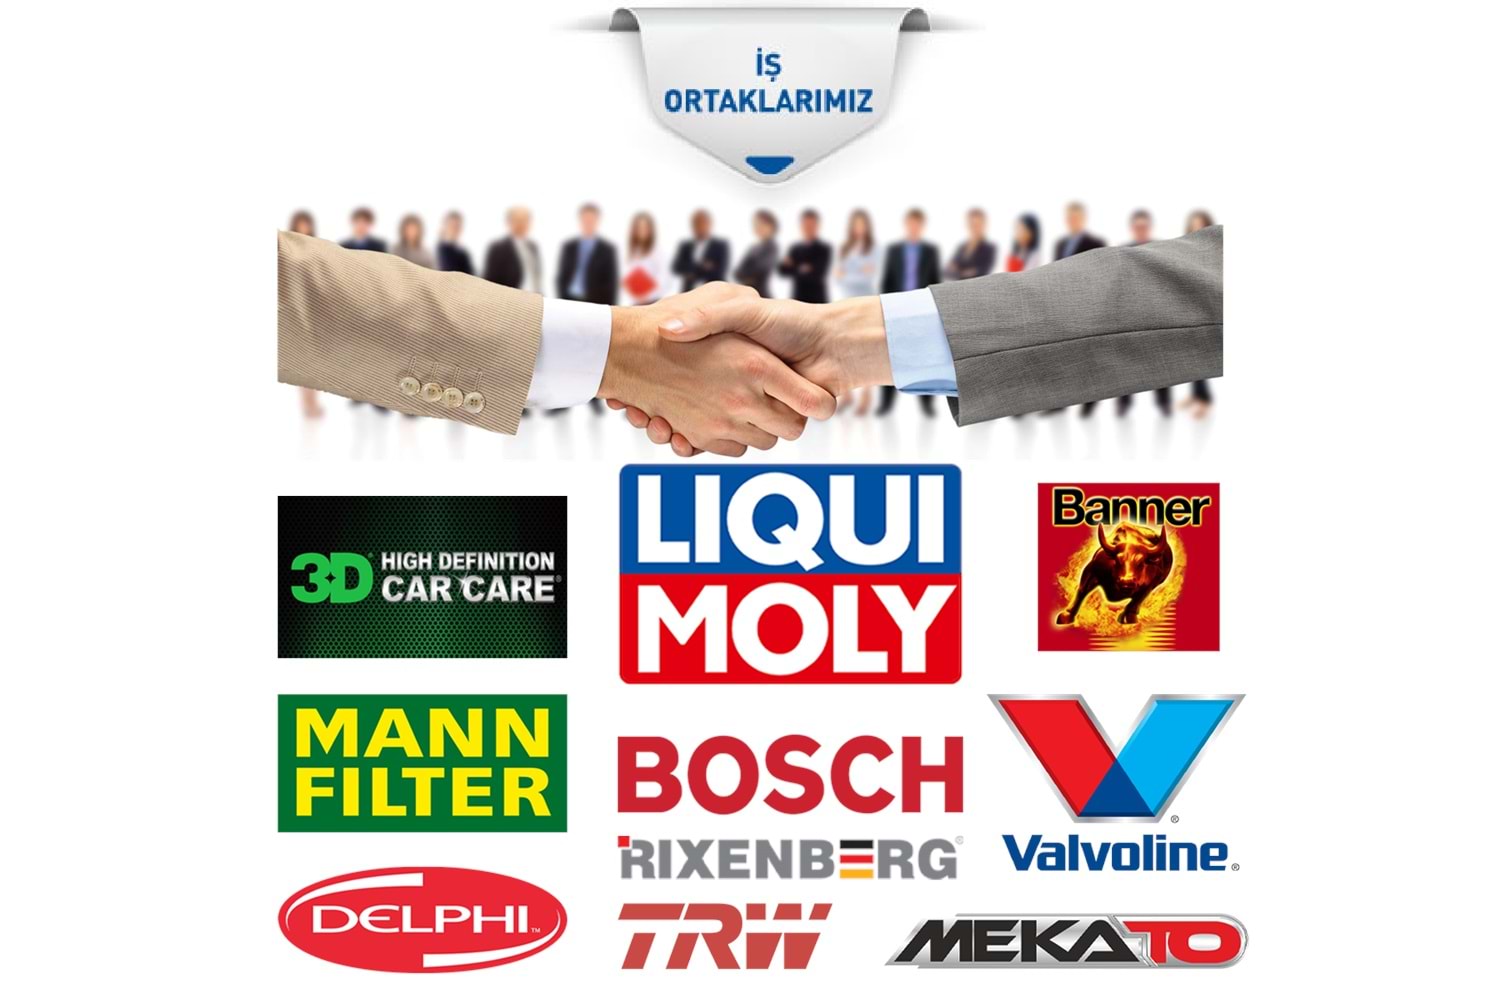 Bosch Fiat Punto (1.2-1.4) Lpg İridyum (1997-2012) Buji Takımı 4 Ad.